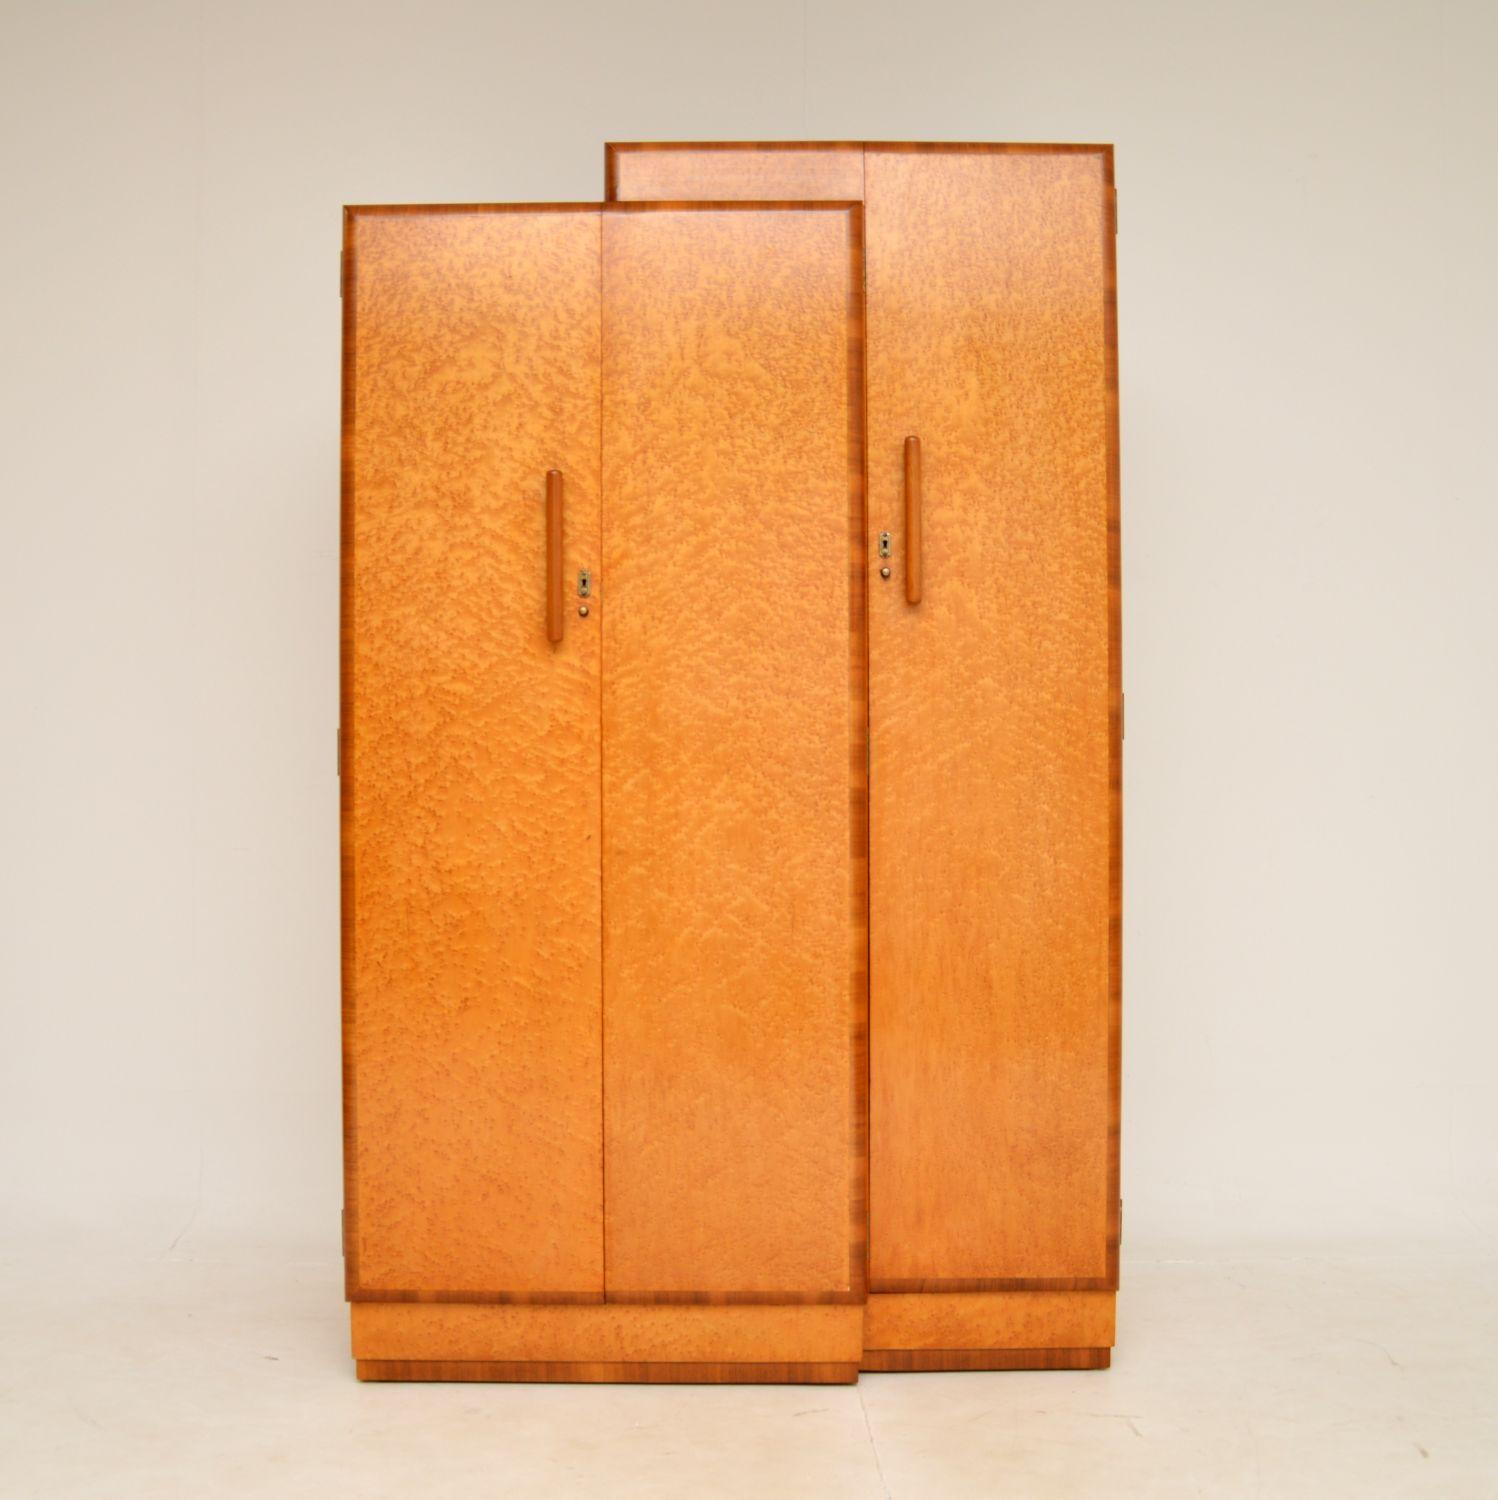 Une spectaculaire armoire Art Déco en érable et noyer. Il a été fabriqué en Angleterre, il date des années 1920-30.

Il s'agit de l'une des armoires les plus originales et les plus élégantes de l'époque que nous ayons jamais rencontrées. Il est